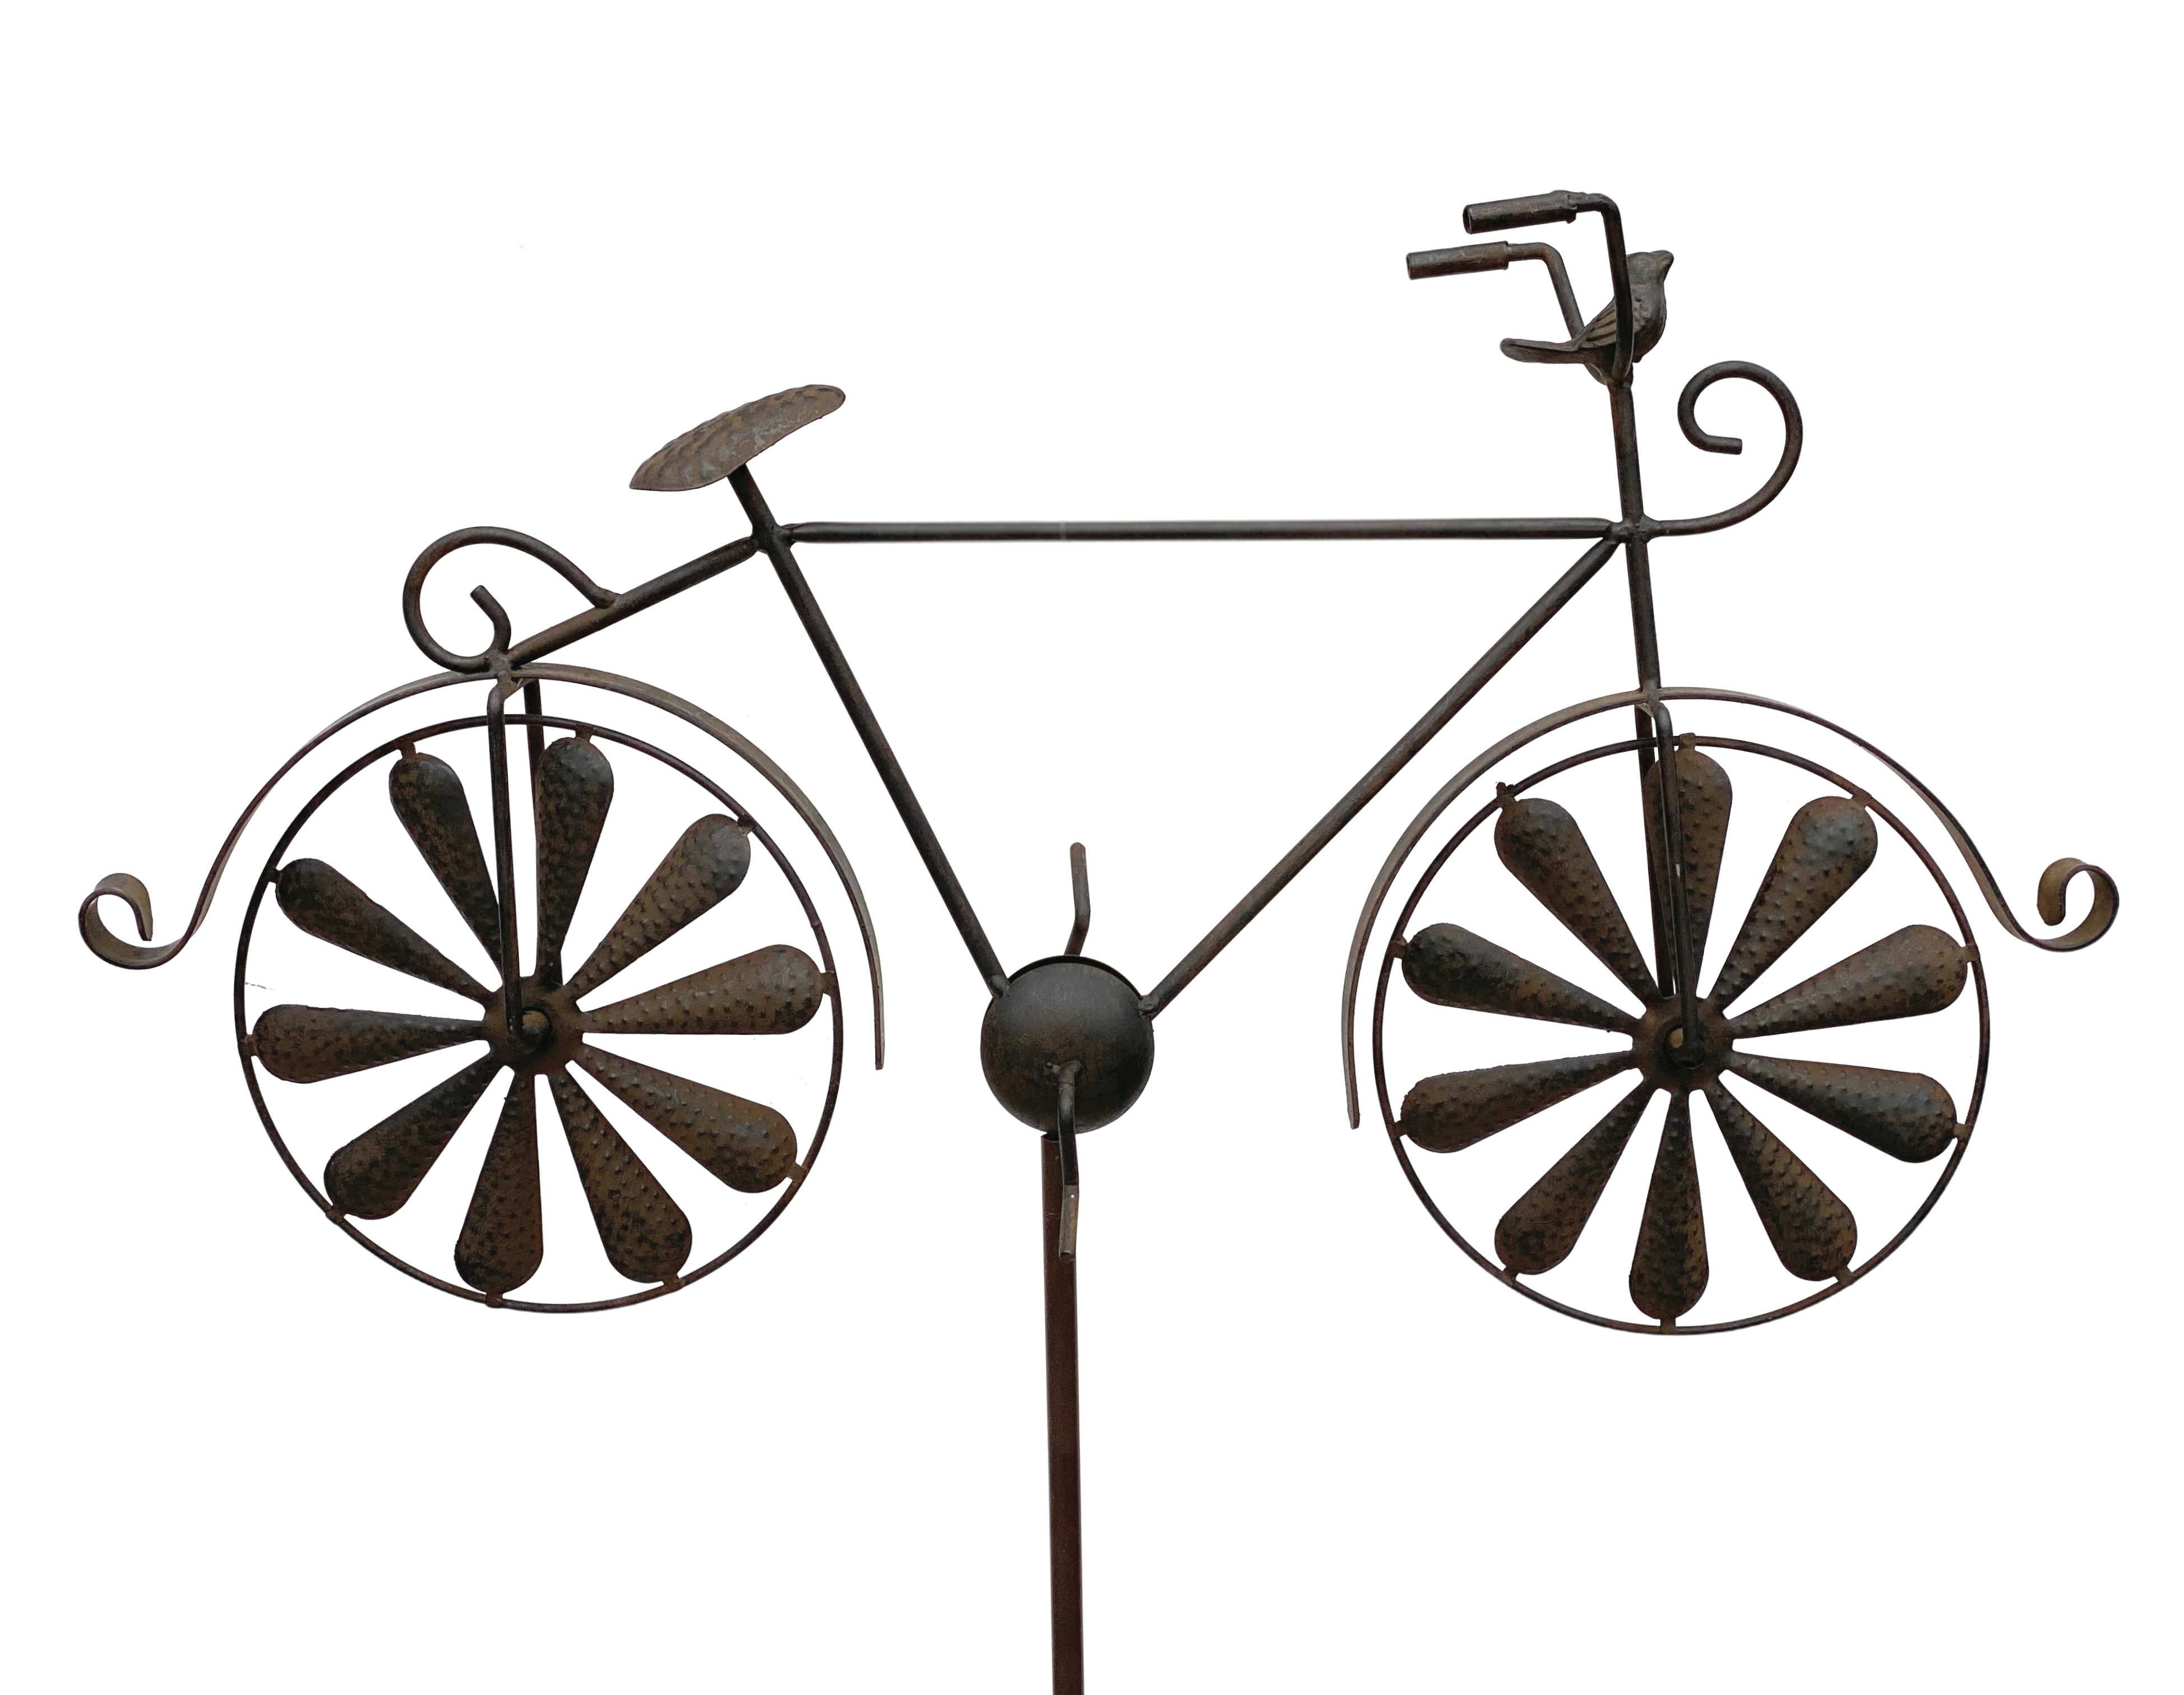 DanDiBo Gartenstecker Metall Fahrrad XL 135 cm Rad Rost